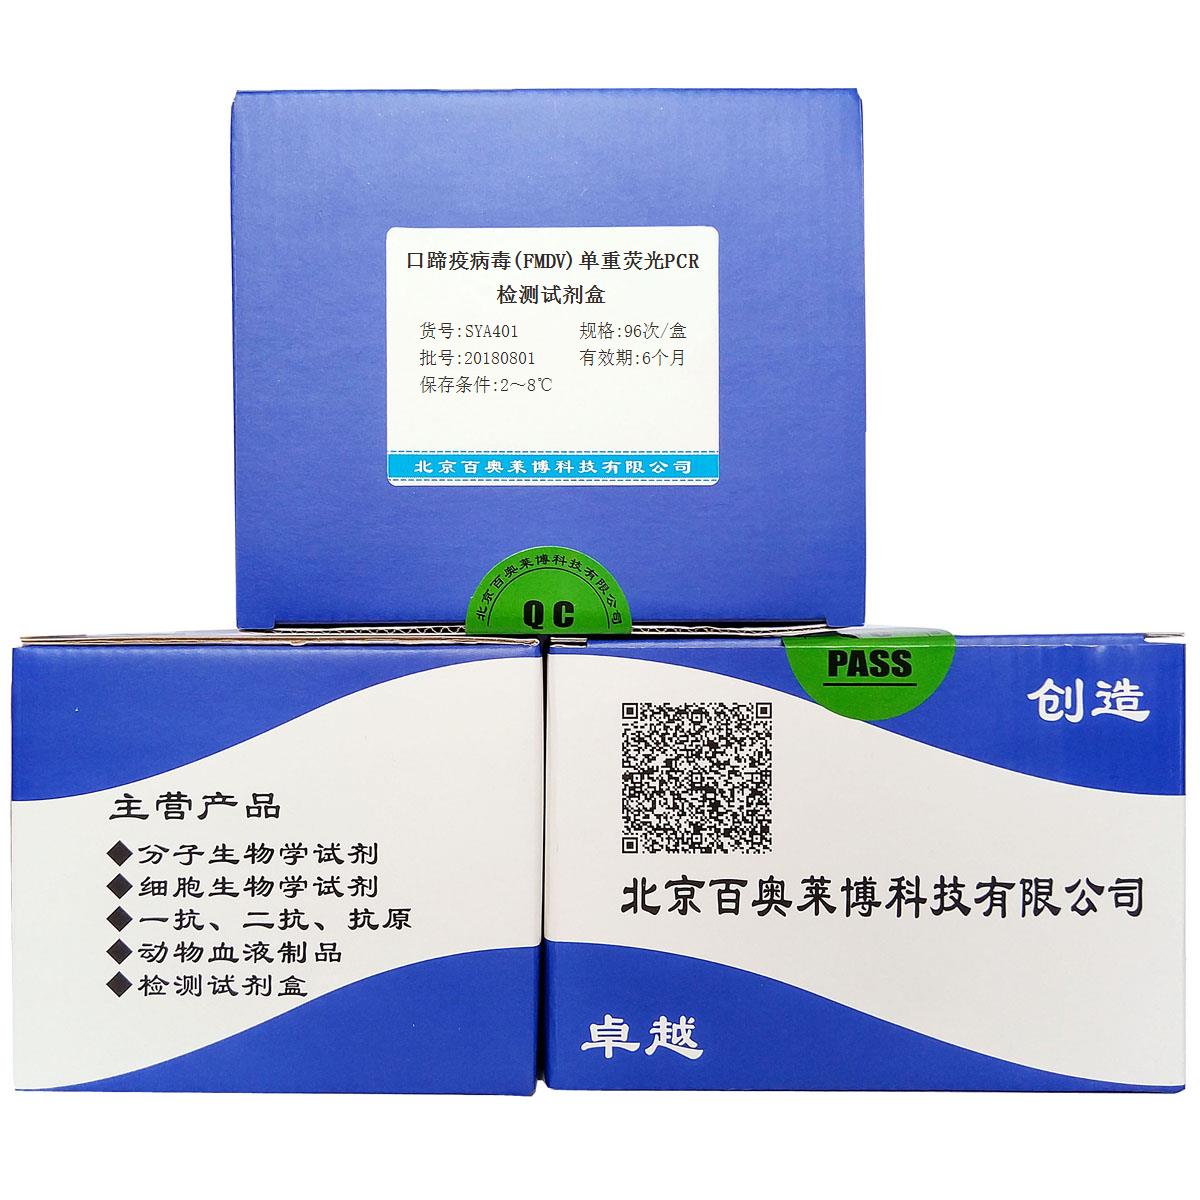 口蹄疫病毒(FMDV)单重荧光PCR检测试剂盒